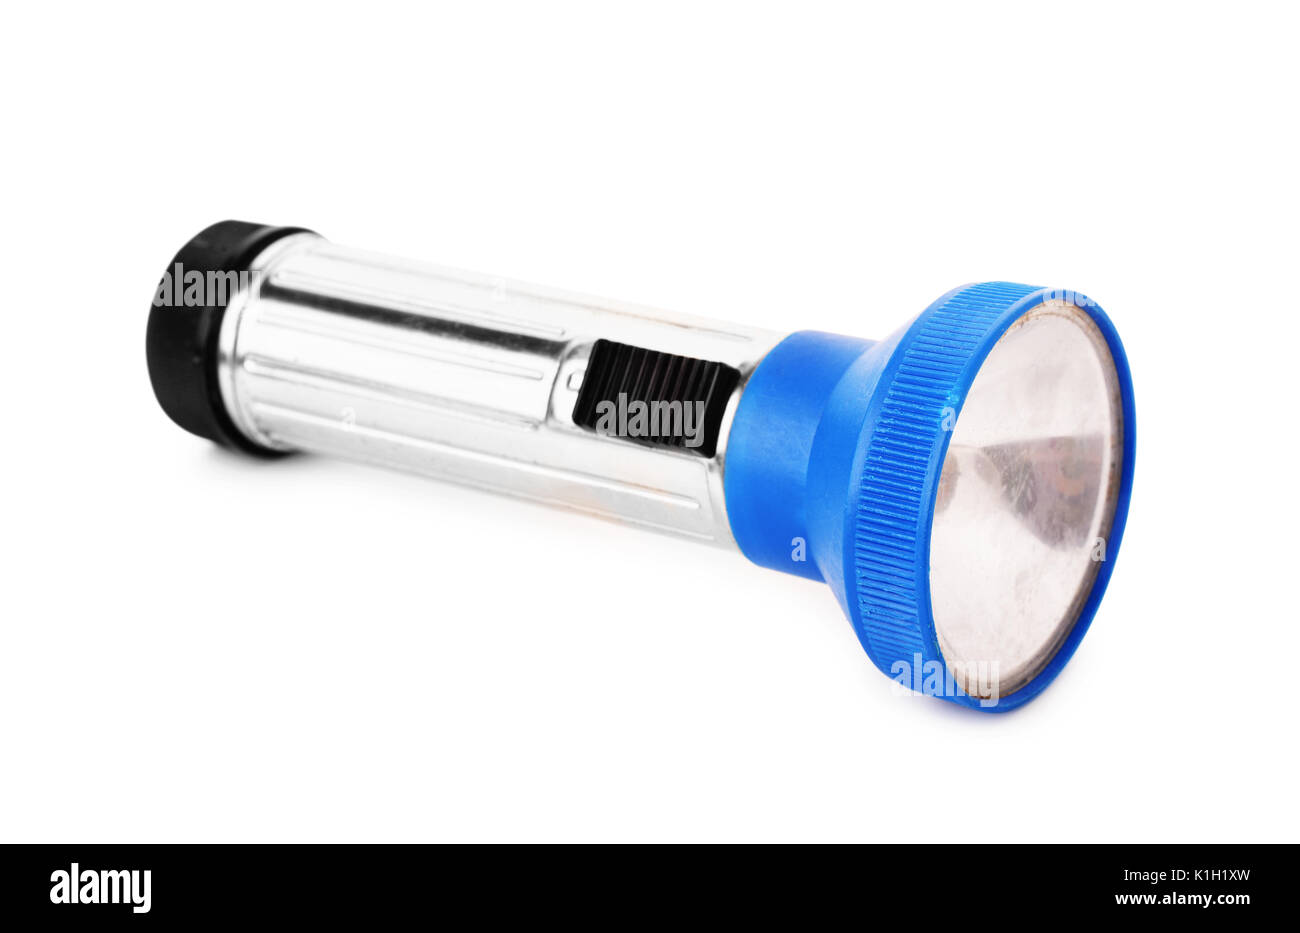 Alte kaputte Blue Pocket Torch Taschenlampe auf weißem Hintergrund  Stockfotografie - Alamy